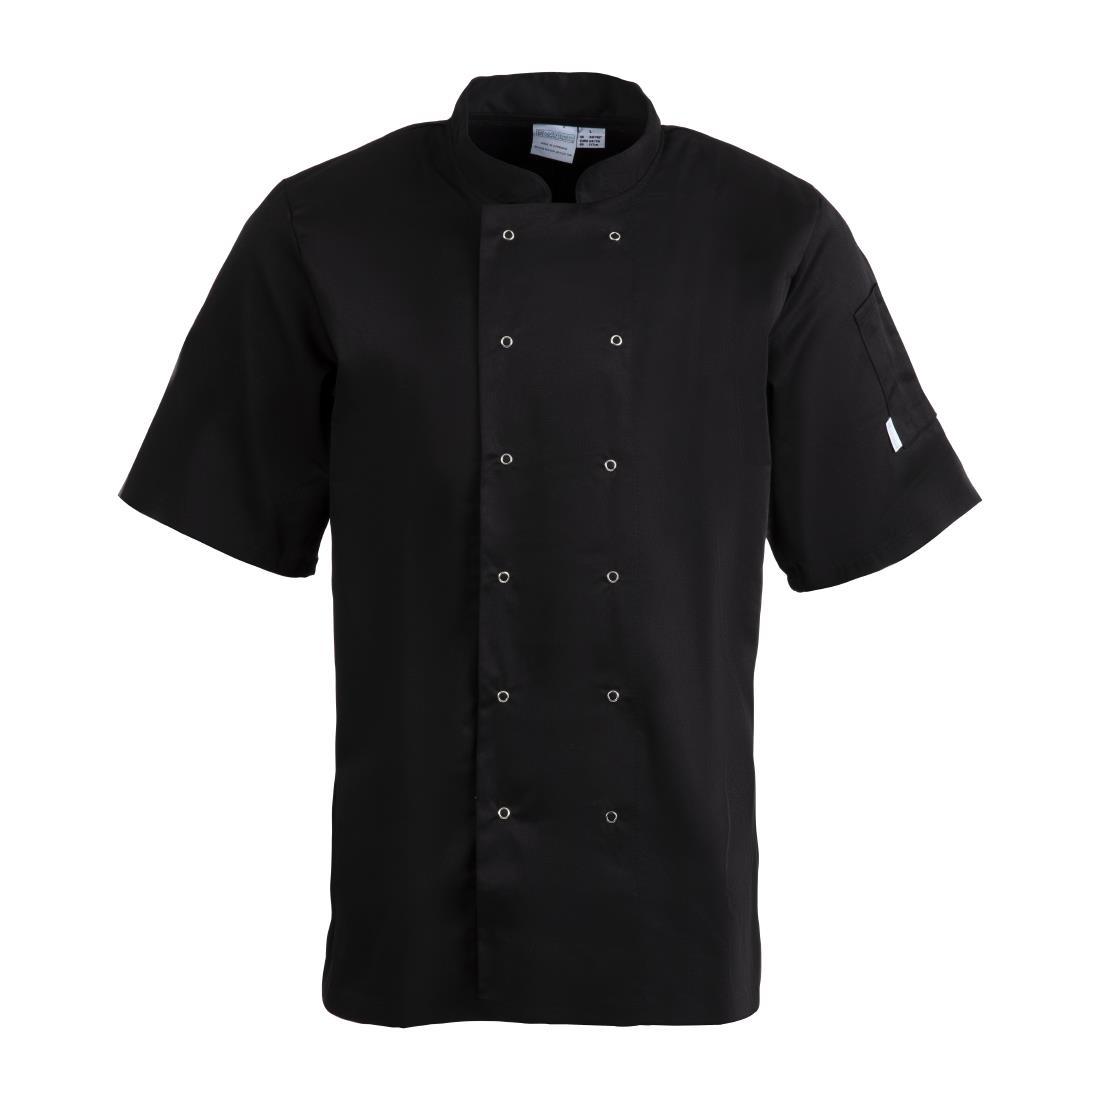 Whites Vegas Unisex Chefs Jacket Short Sleeve Black 5XL - A439-5XL  - 1